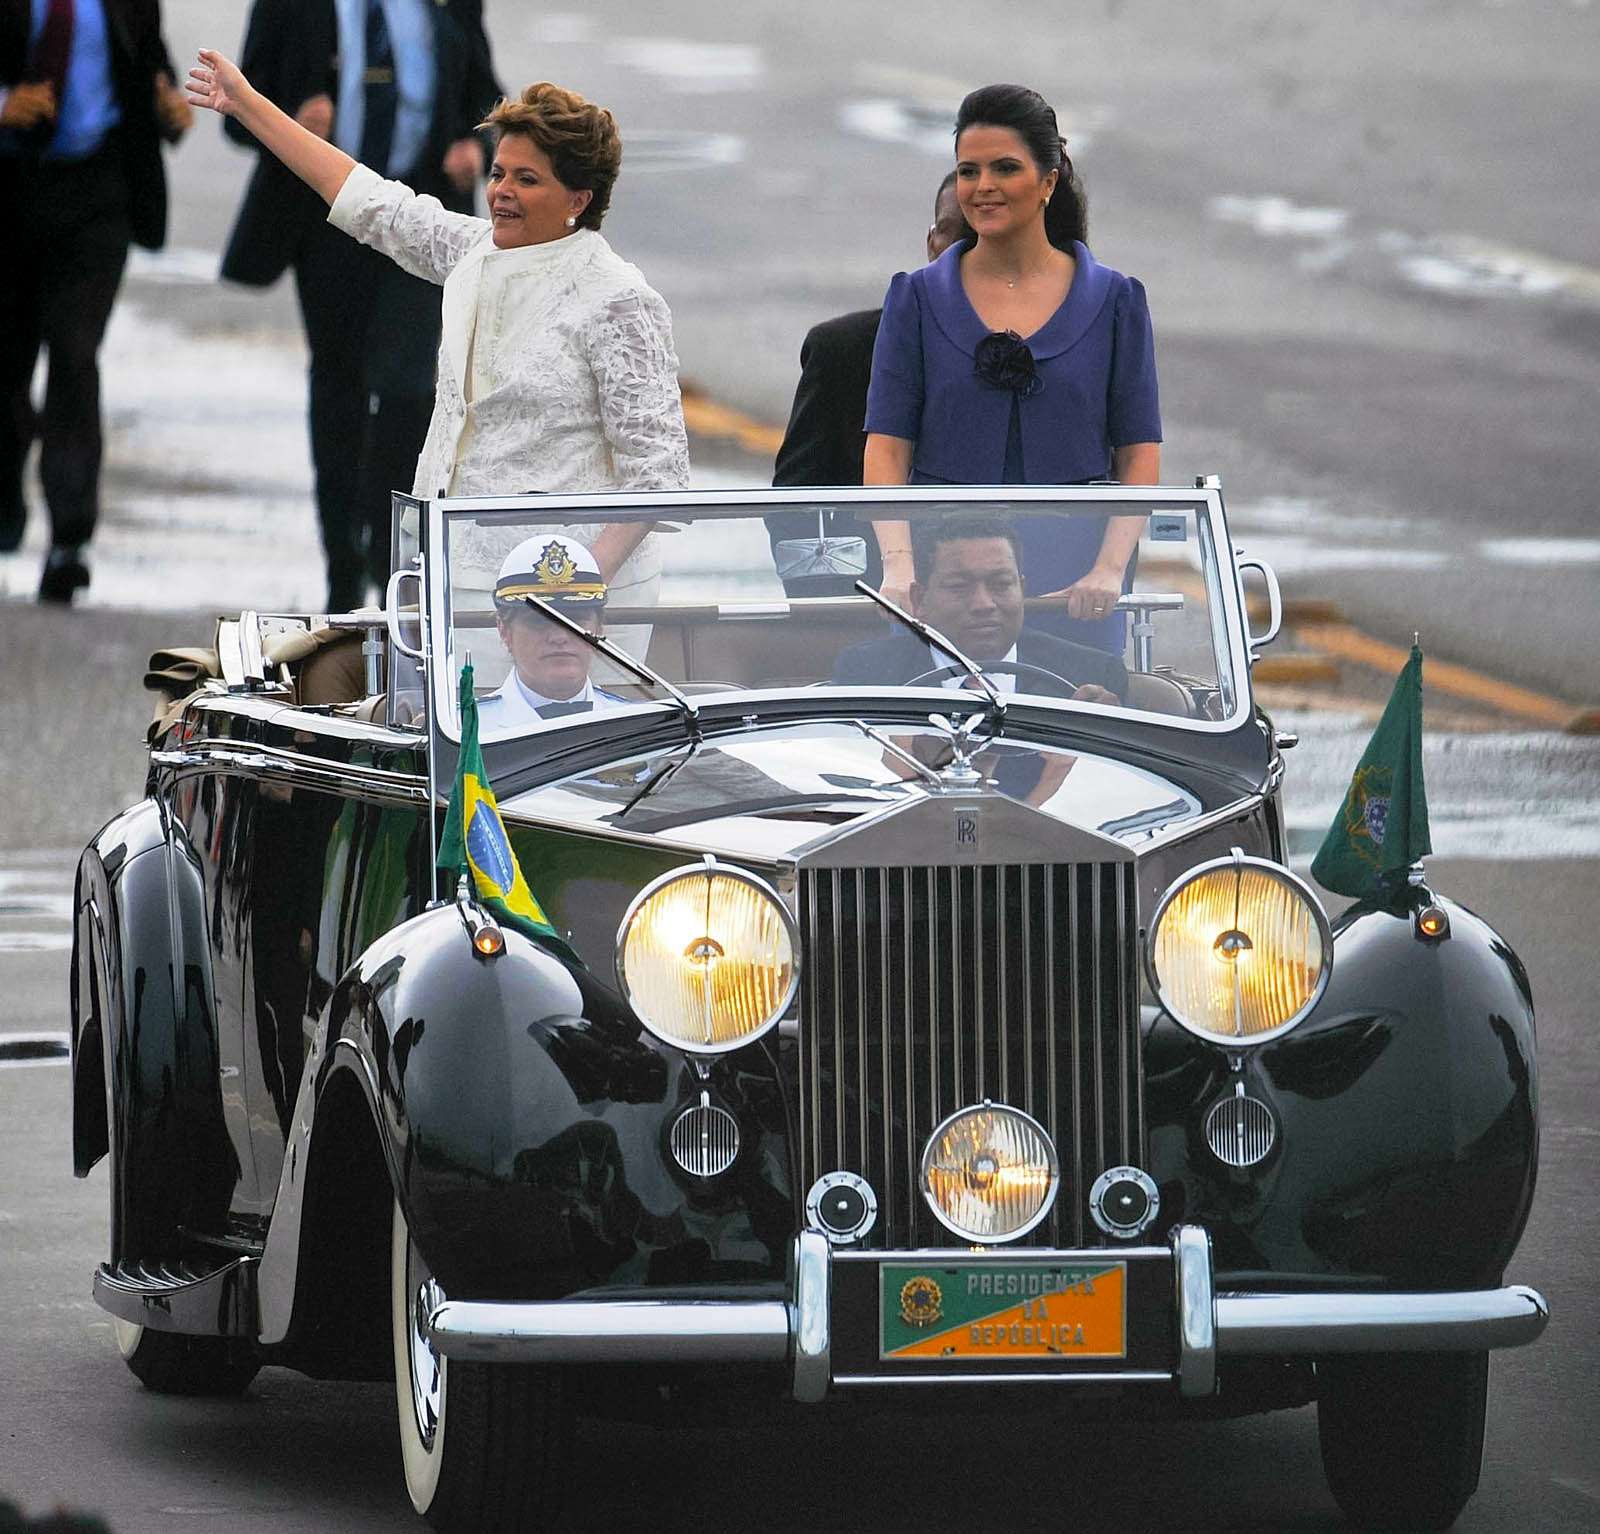 Фотография с инаугурации первой женщины-президента Бразилии Дилмы Русеф. Она приветствовала народ из Роллс-Ройса 1953 года. За президентской машиной следовал бронетранспортер. Его в этом кадре не видно.